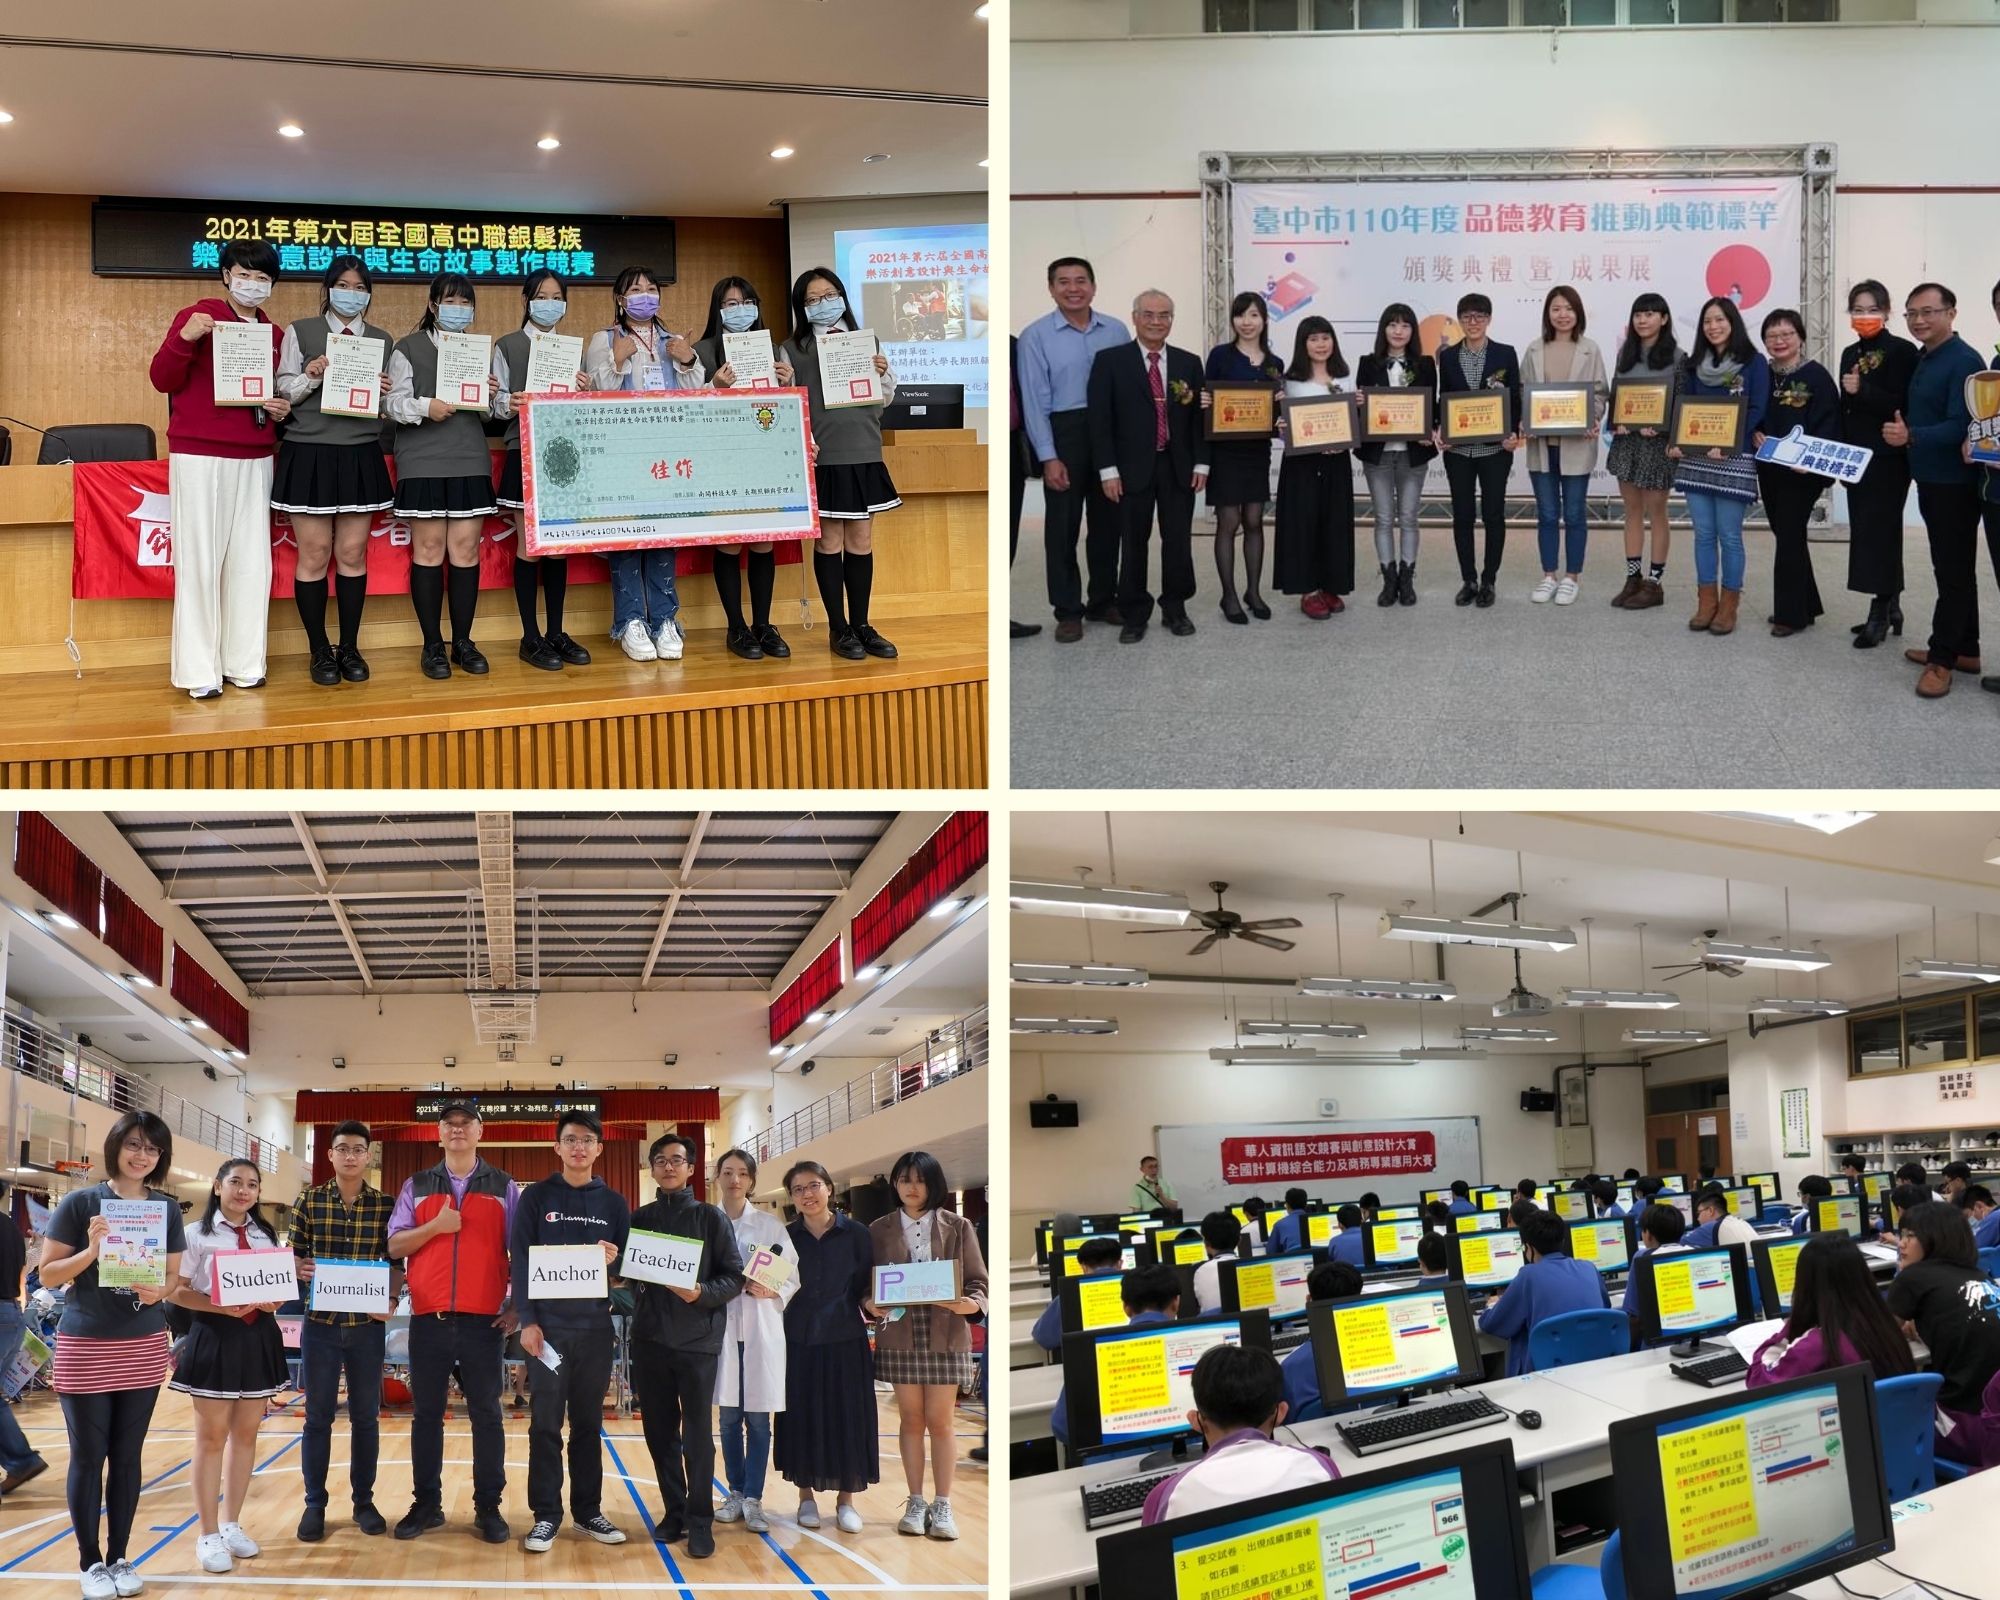 Tuyển sinh du học cấp 3 Đài Loan - Trường cấp 3 Từ Minh